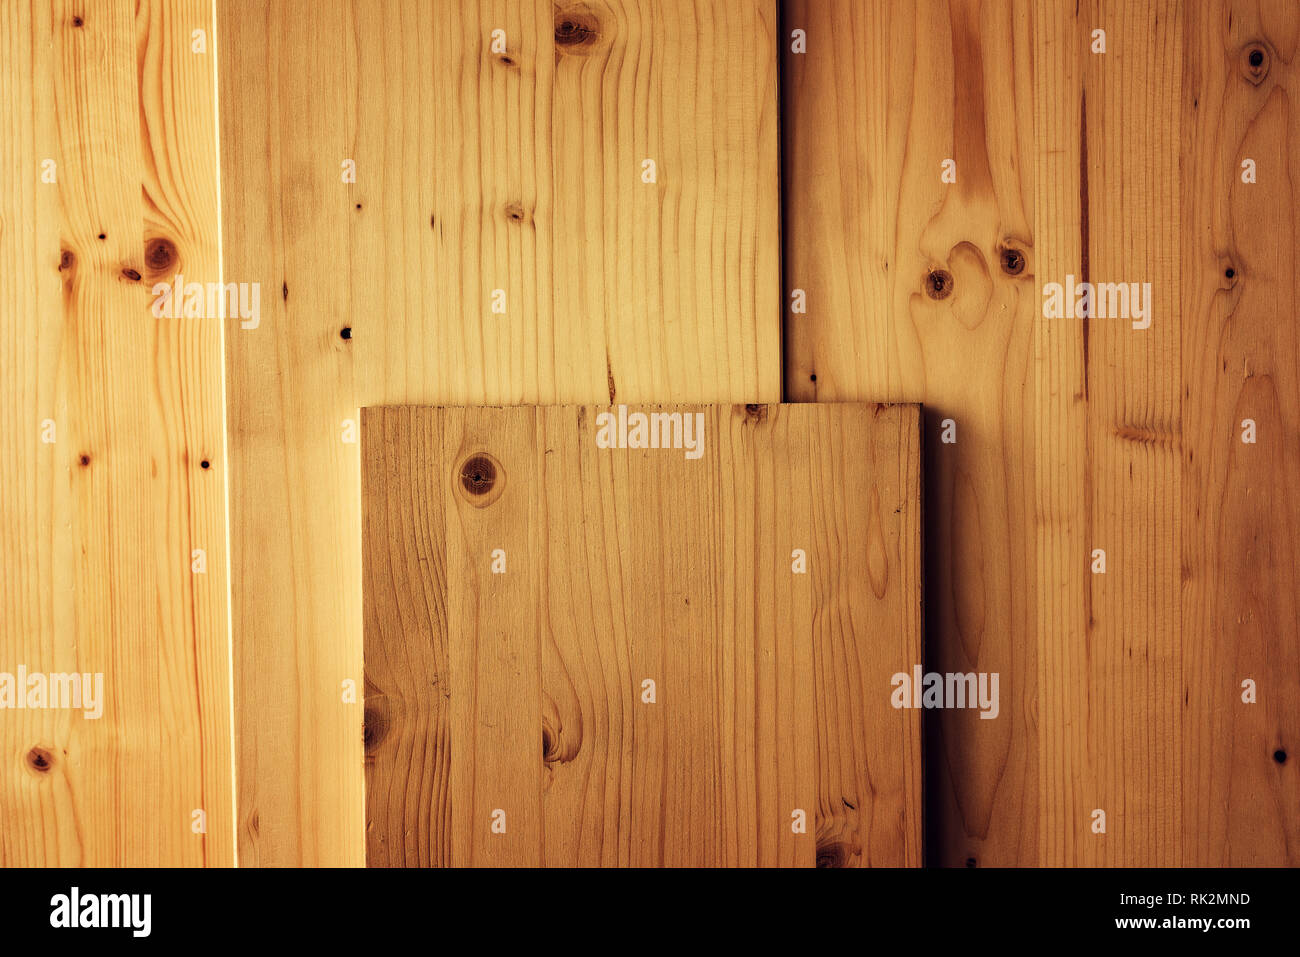 Planches de bois de pin que la menuiserie, menuiserie planches empilés dans l'atelier comme arrière-plan Banque D'Images